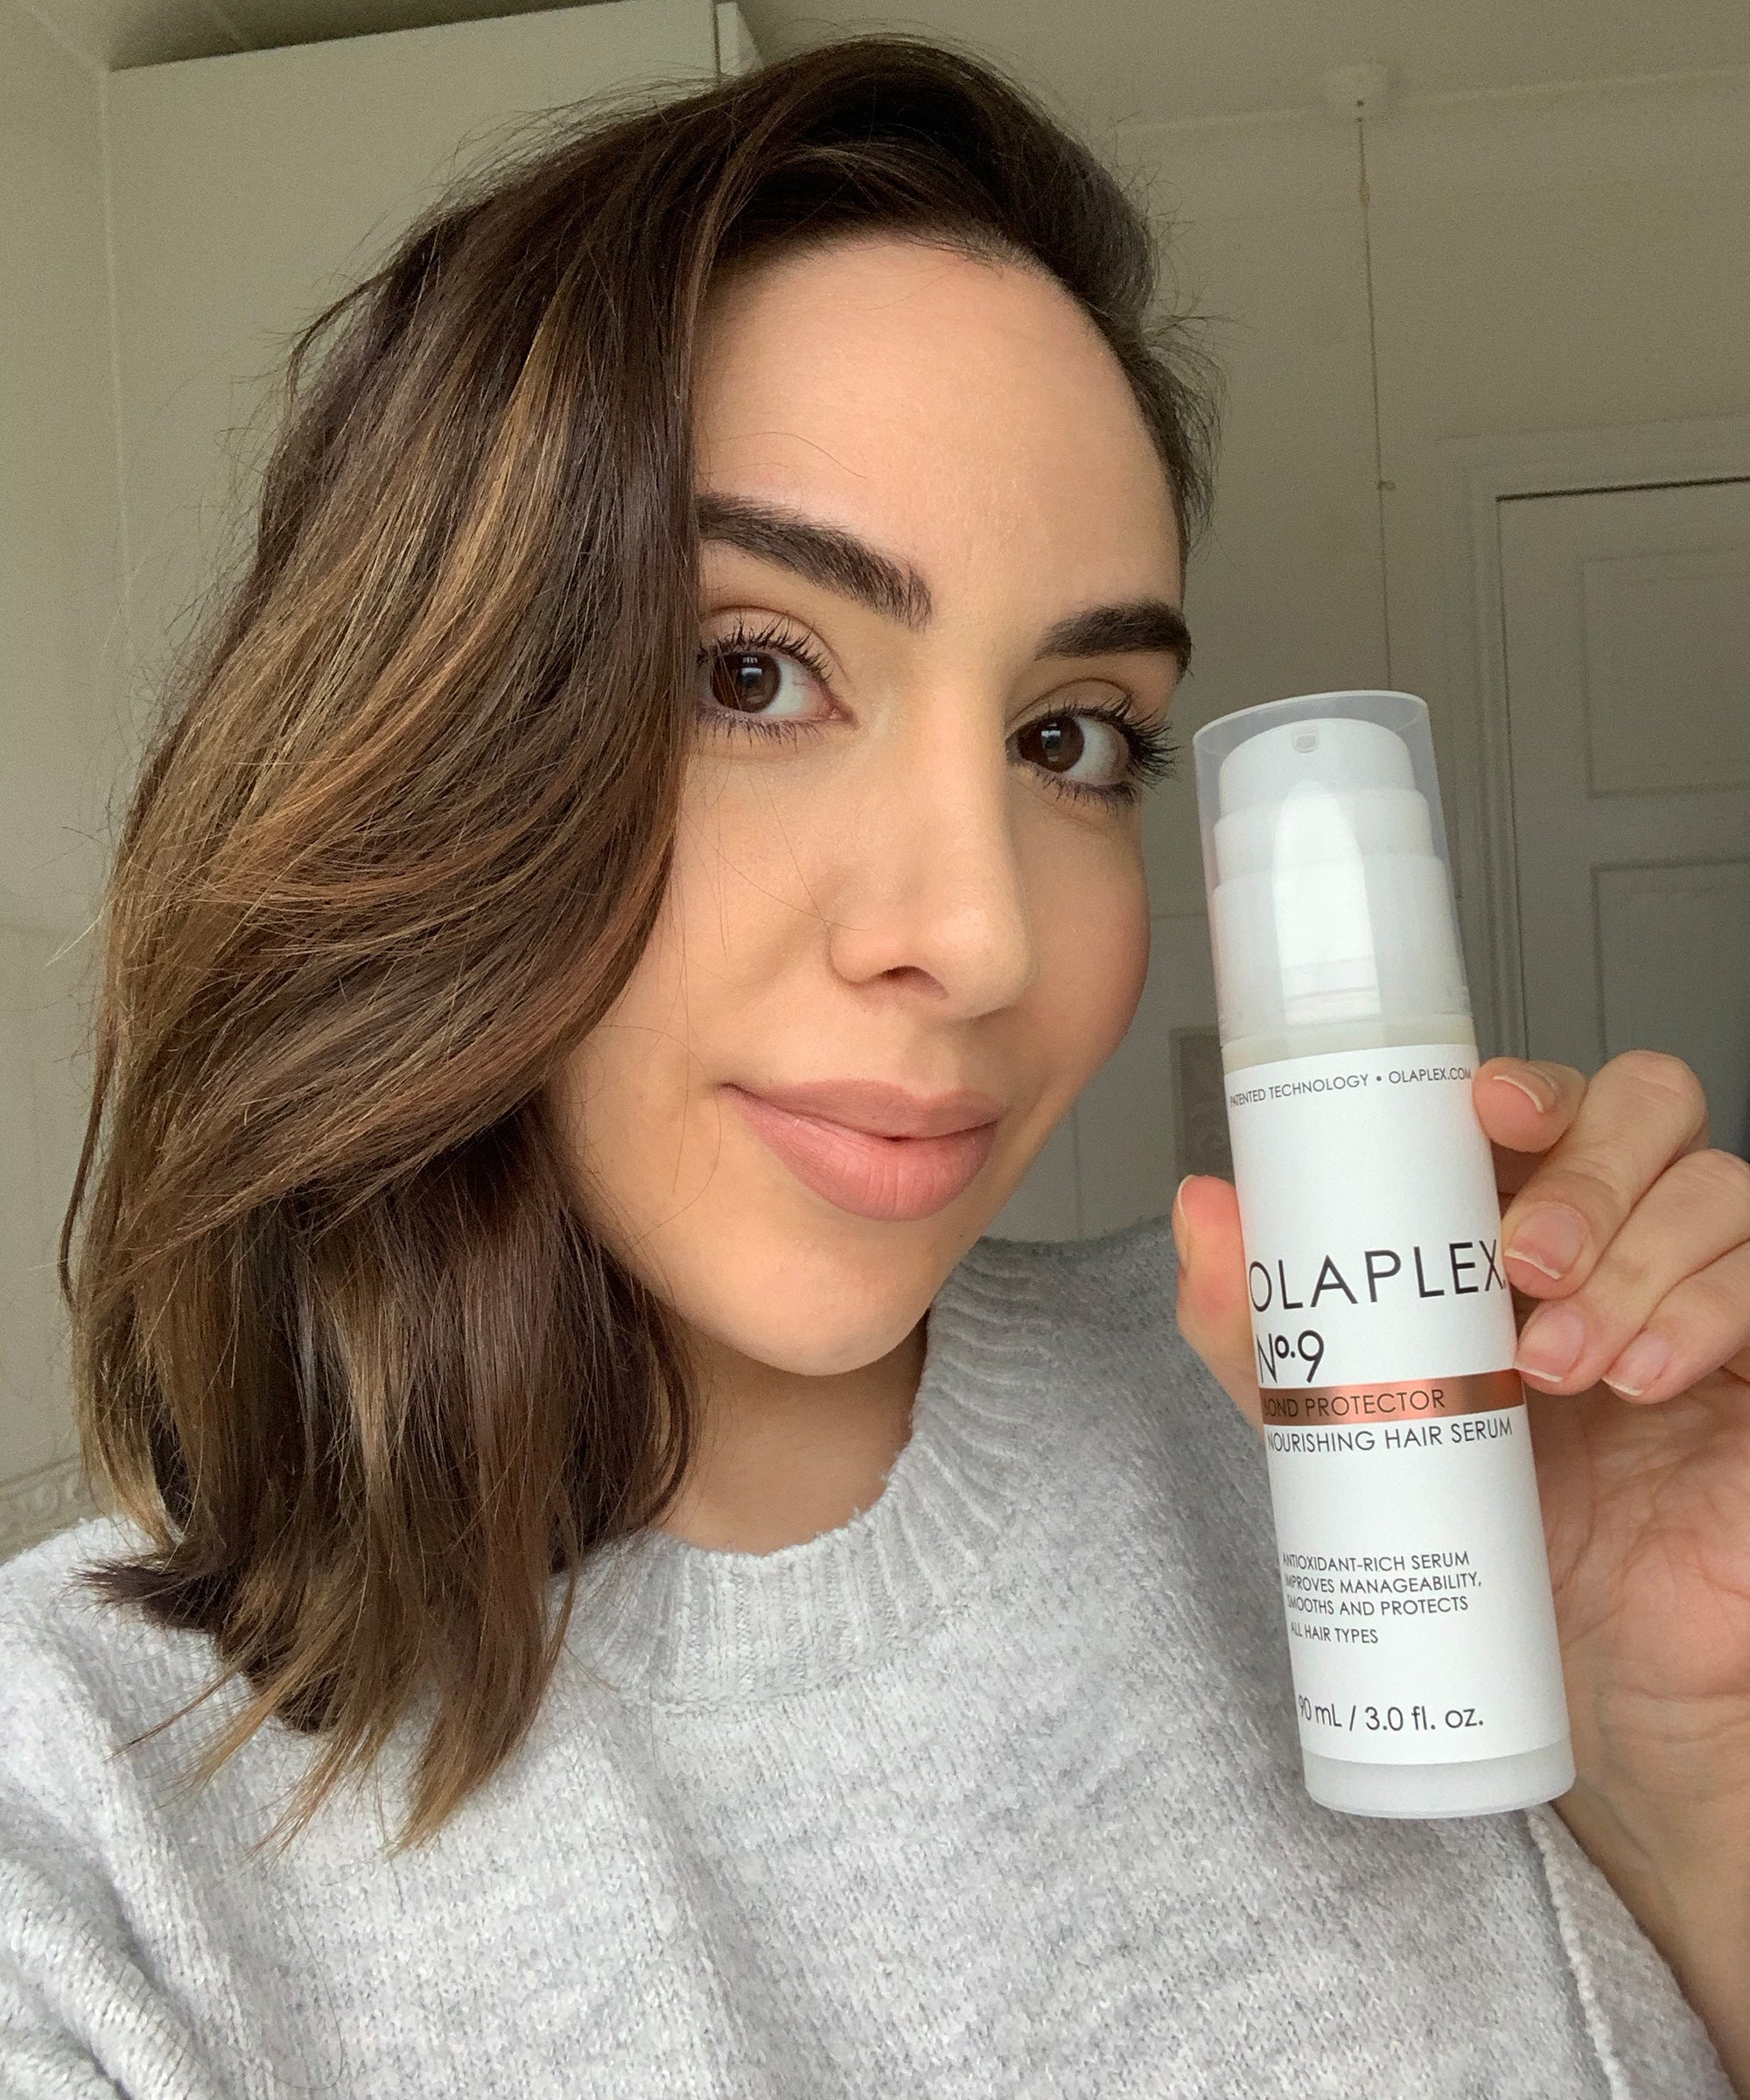 Olaplex No. 9 Bond Protector Hair Serum Honest Review